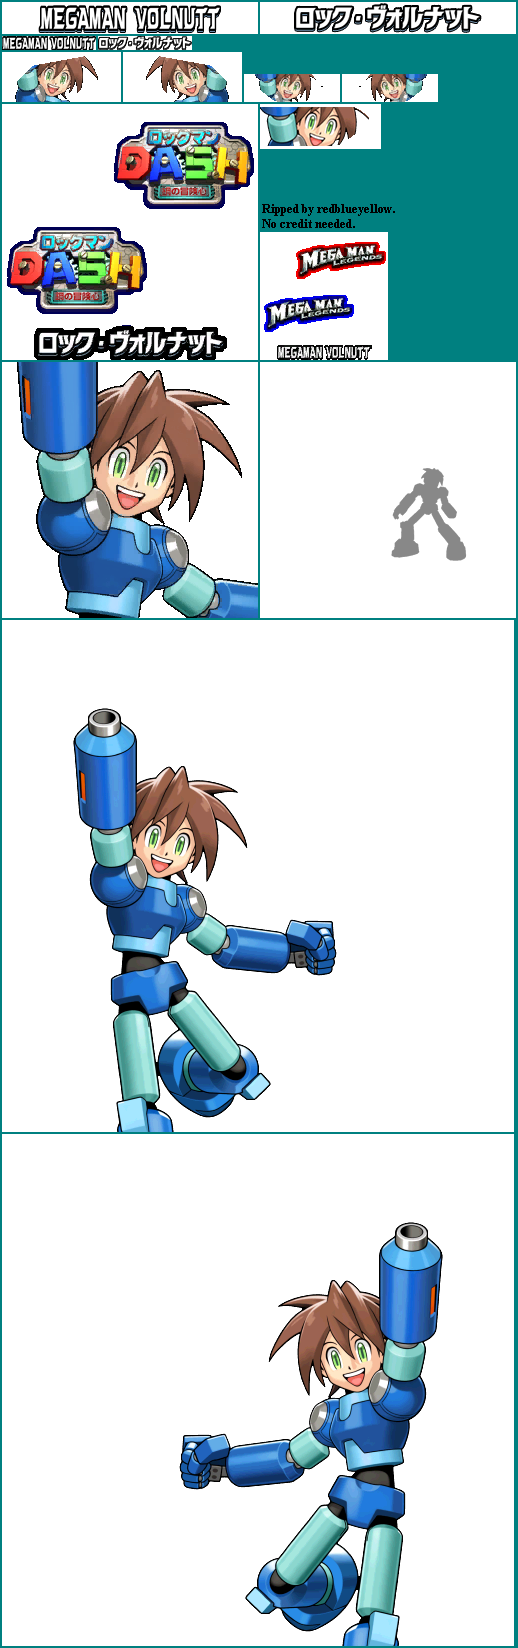 Mega Man Volnutt